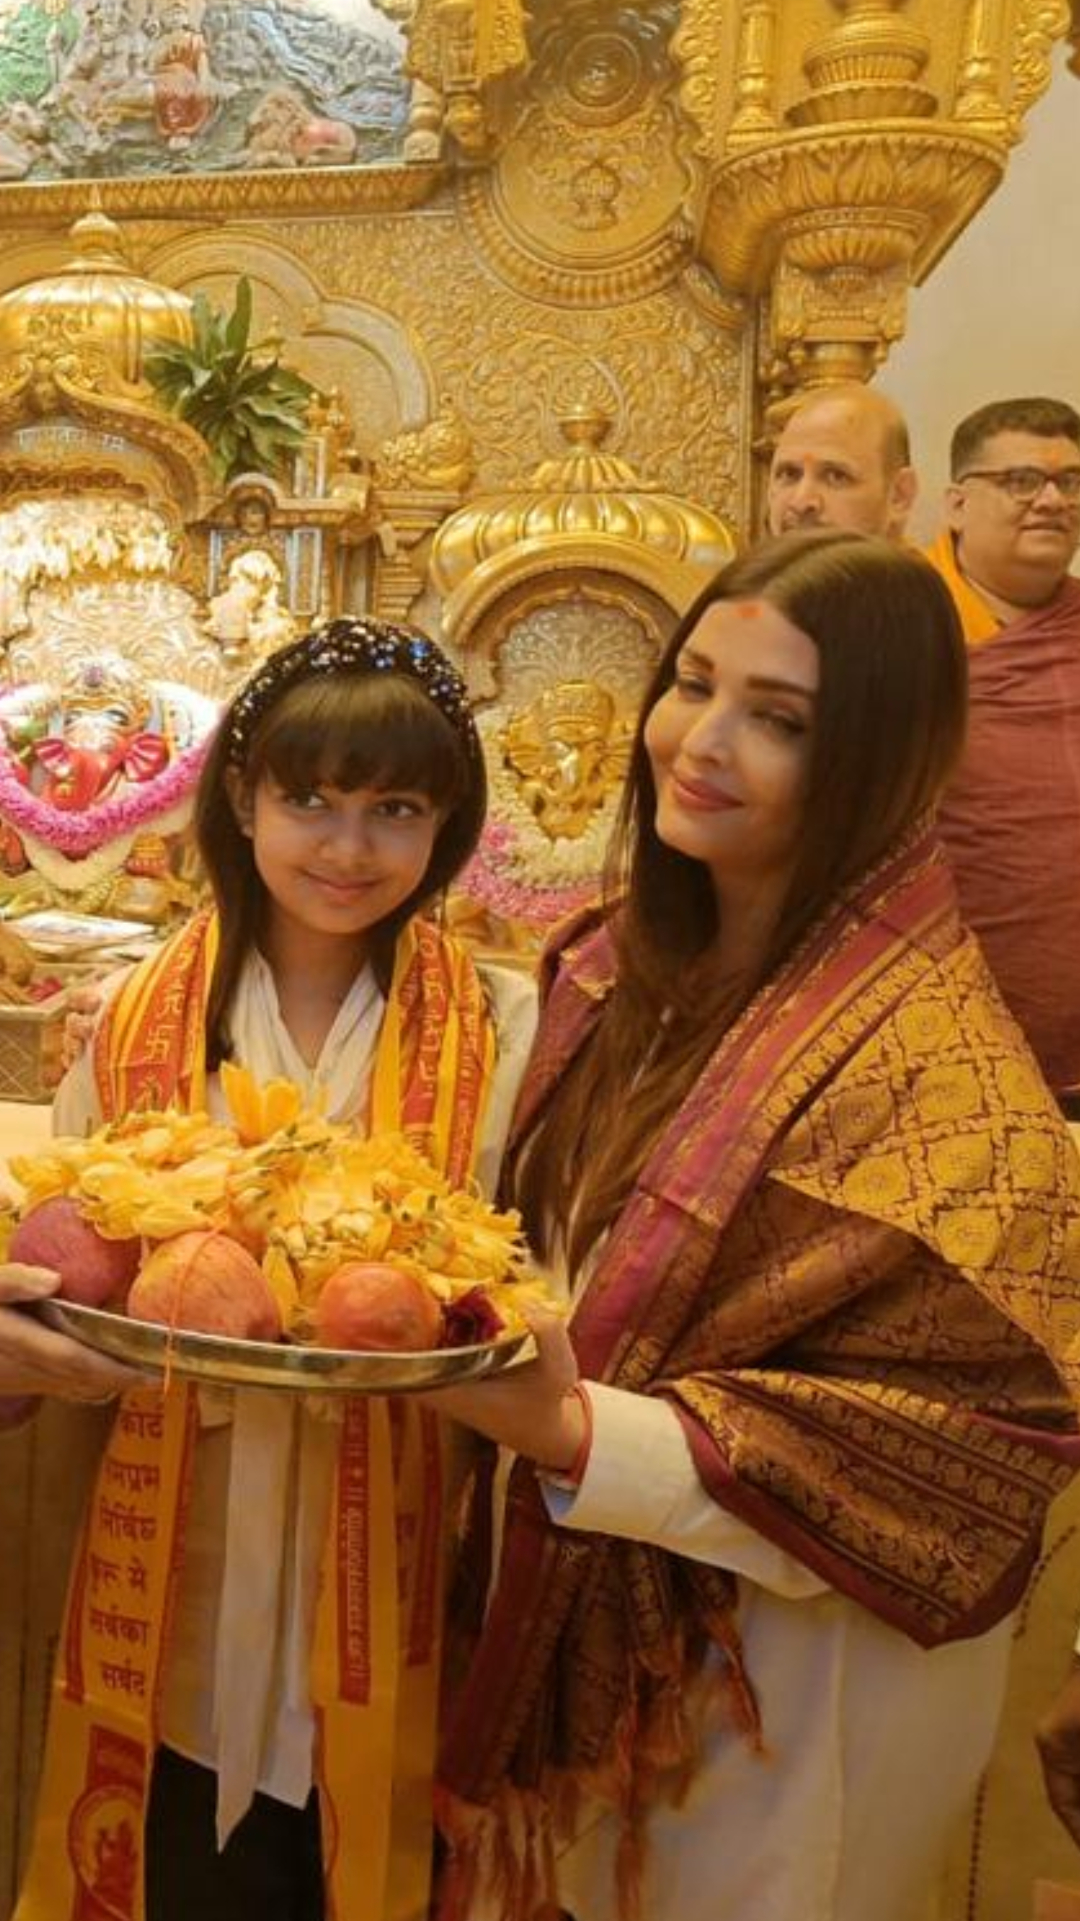 ऐश्वर्या राय बच्चन आज अपने 49 वें जन्मदिन पर बेटी आराध्या के साथ सिद्धिविनायक मंदिर पहुंचकर बप्पा का दर्शन करती दिखीं। 